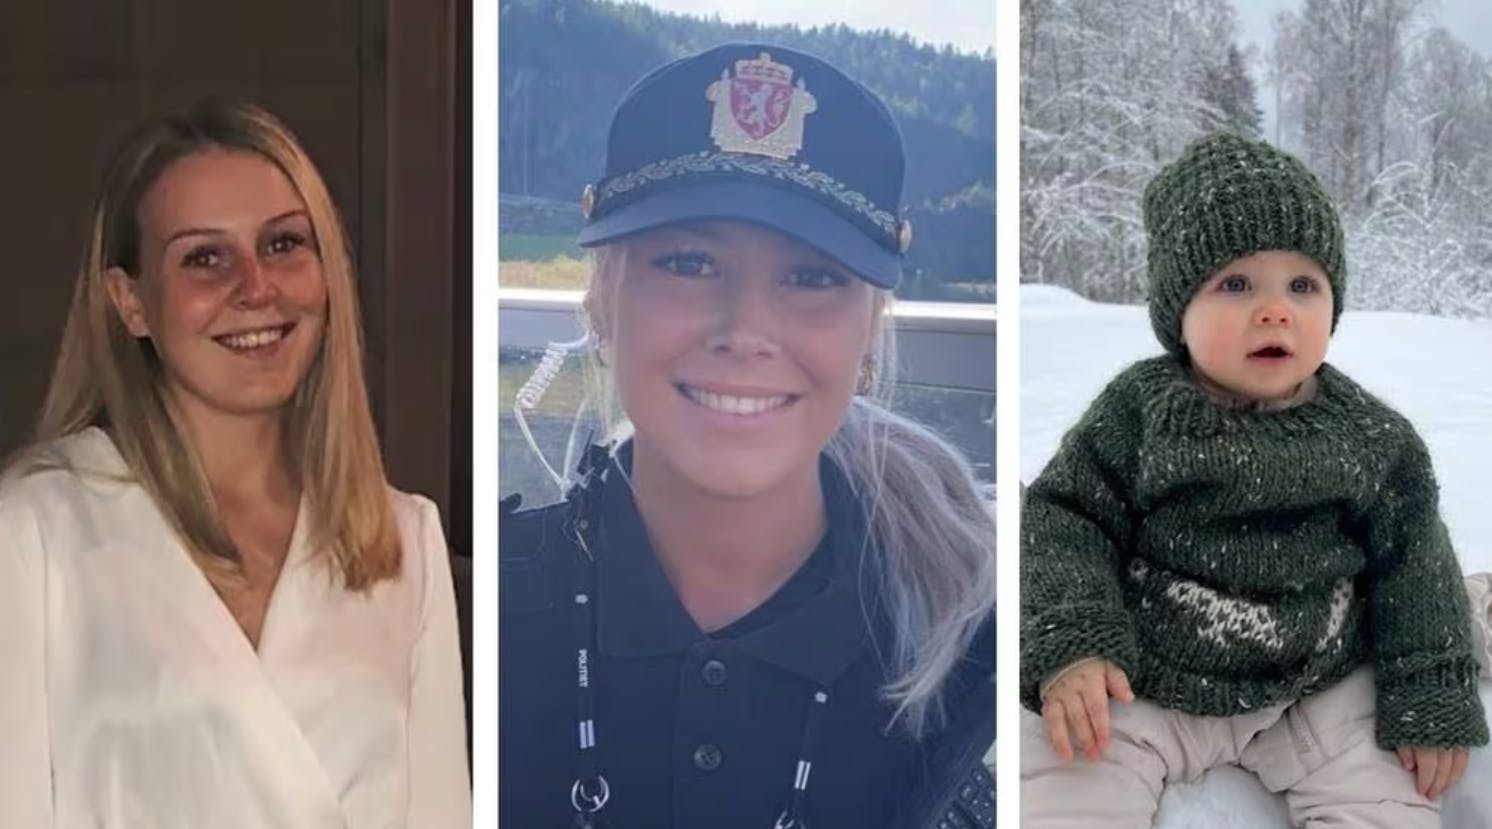 Norsk politi har i samråd med de pårørende valgt at offentliggøre billeder og navne på de dræbte i Nes.